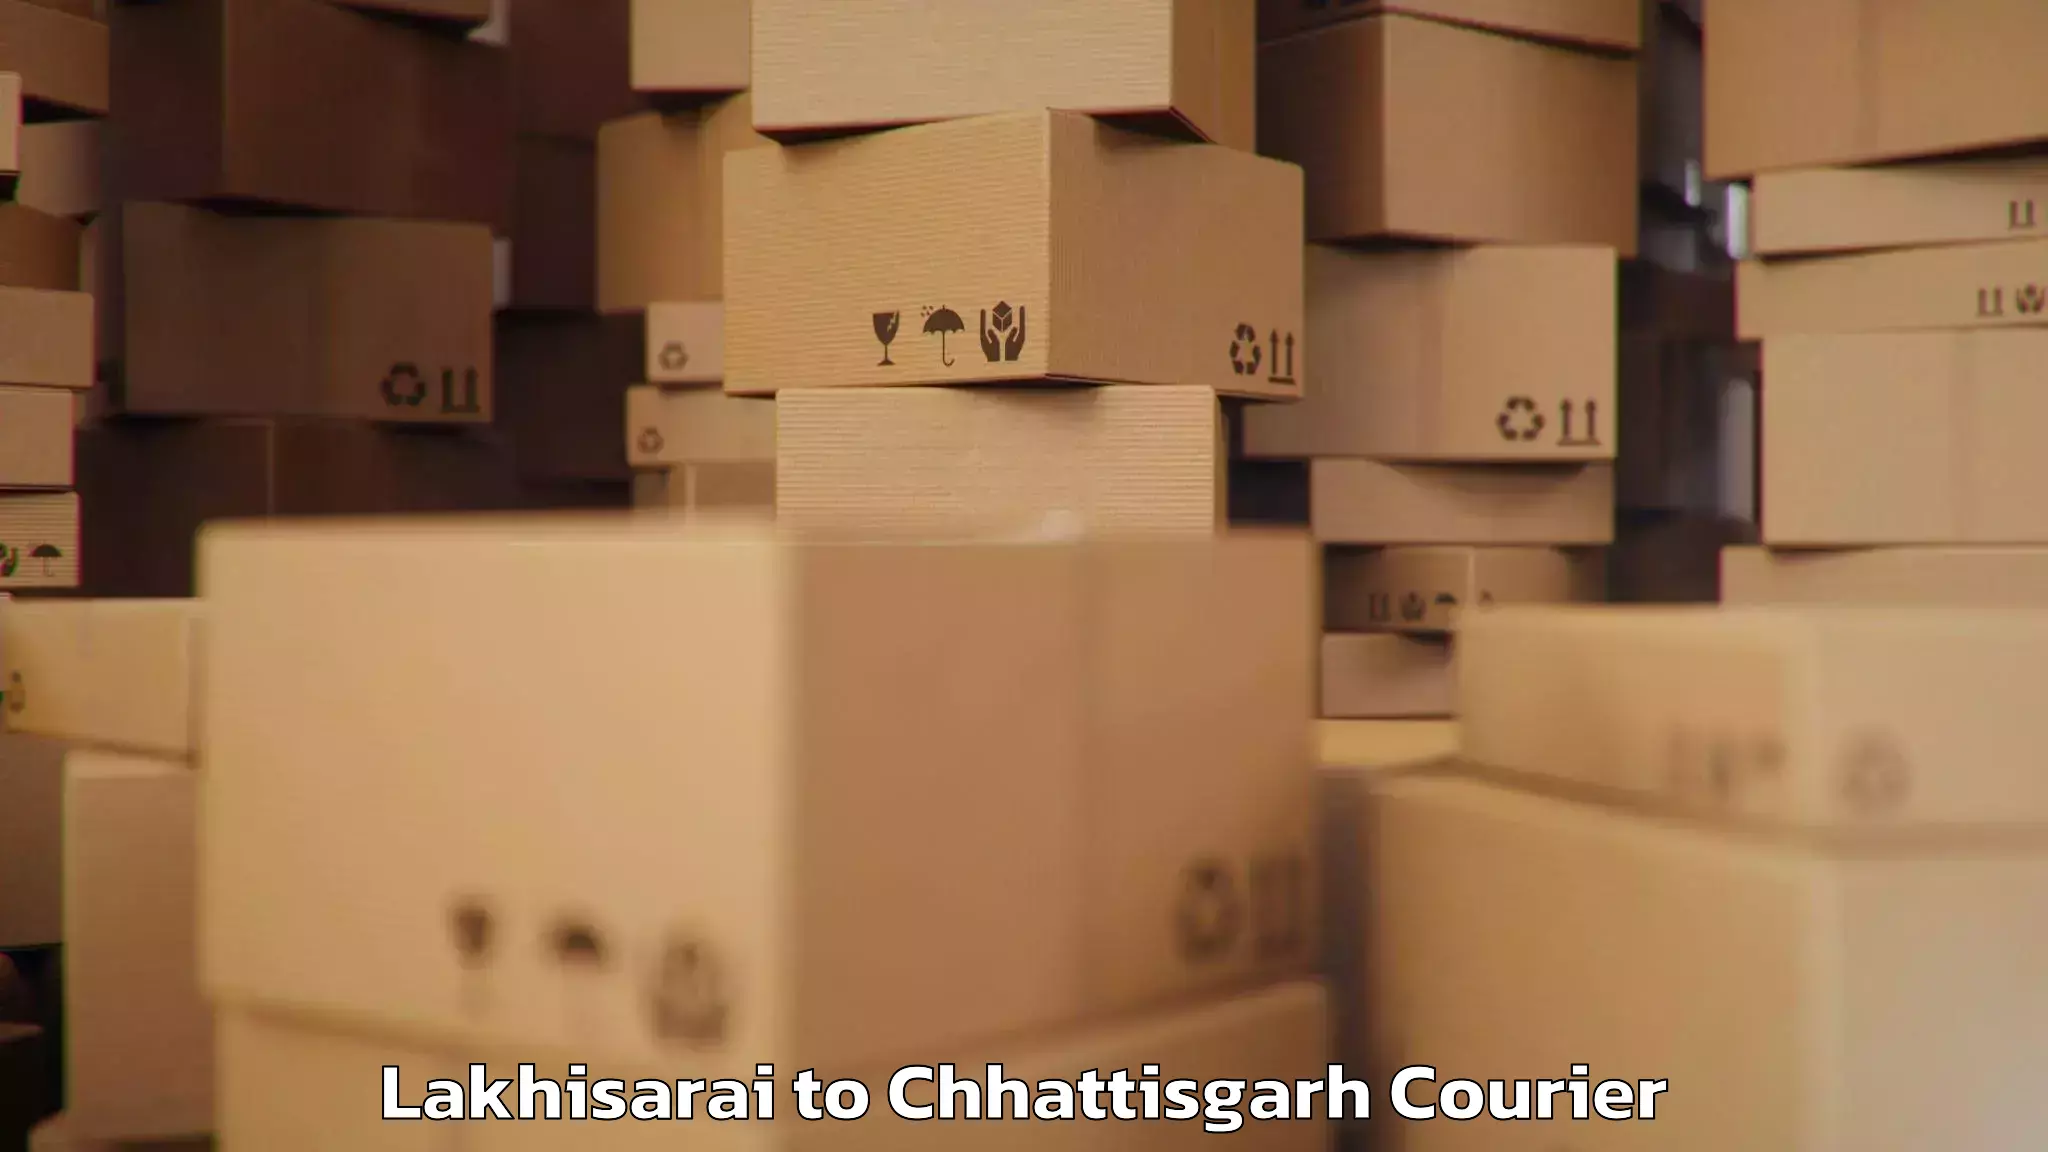 Baggage transport scheduler Lakhisarai to Korea Chhattisgarh